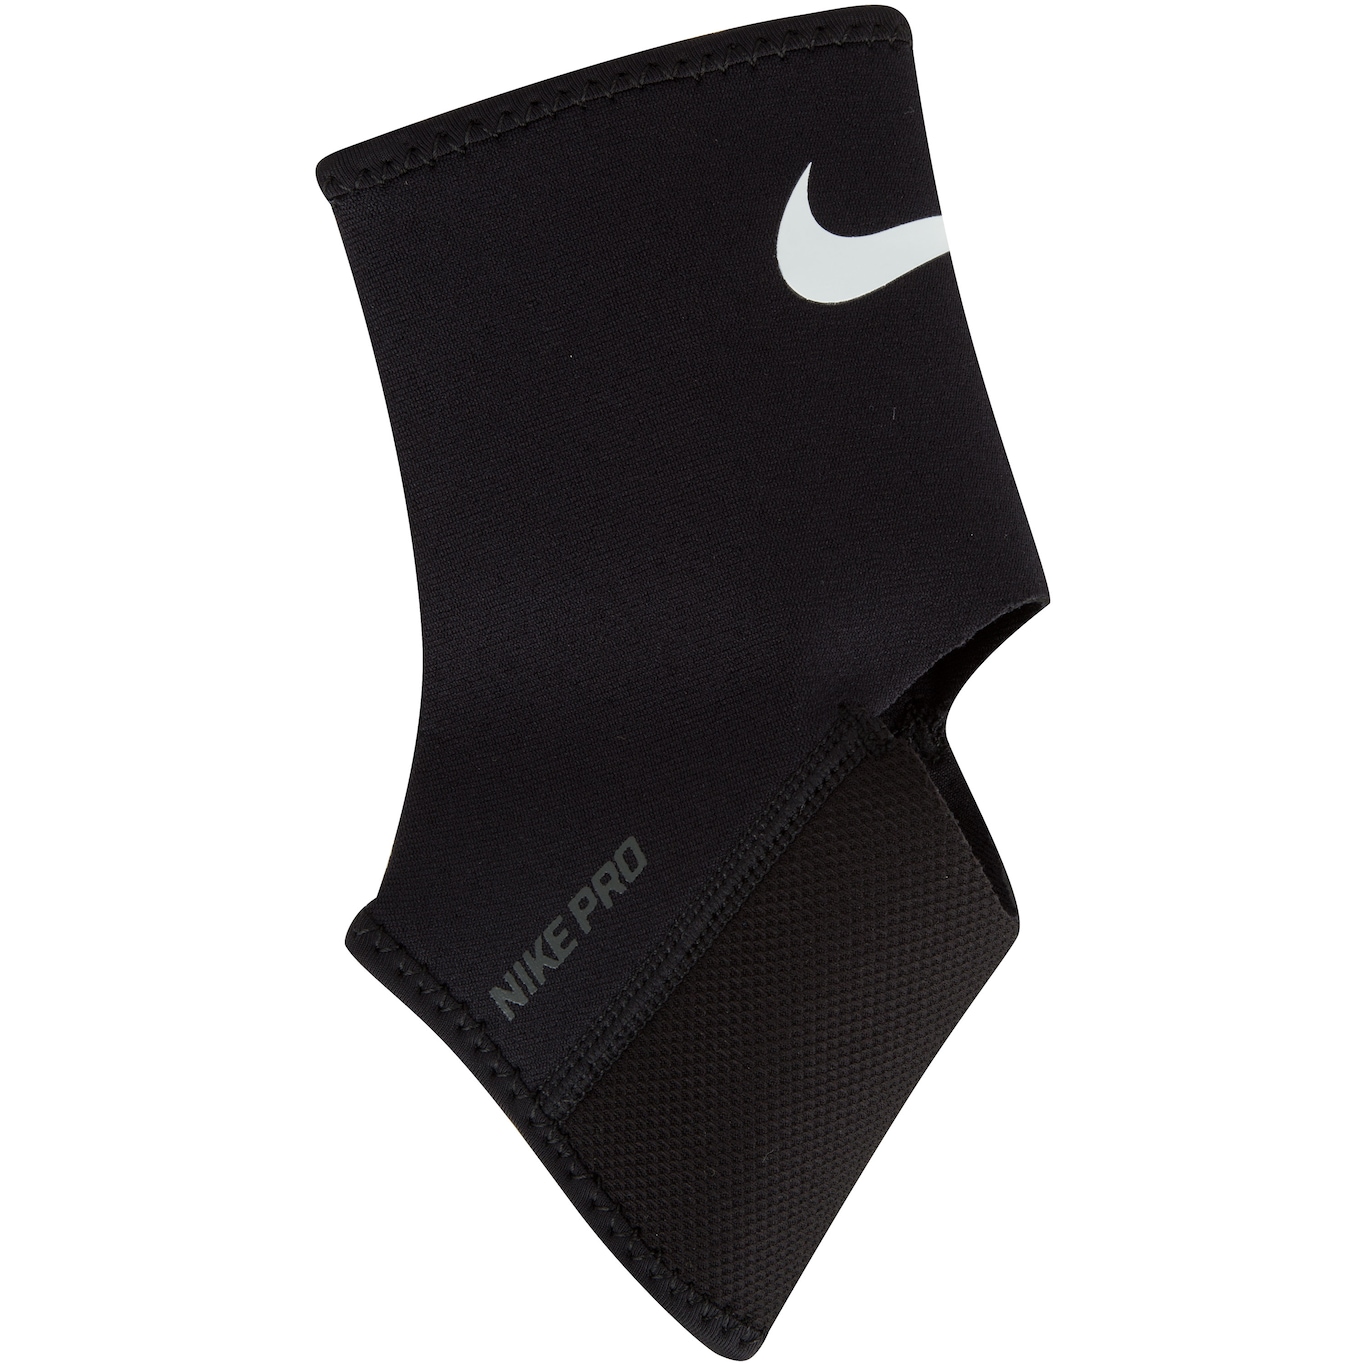 Tornozeleira Nike Pro Ankle Sleeve 2.0 - Adulto